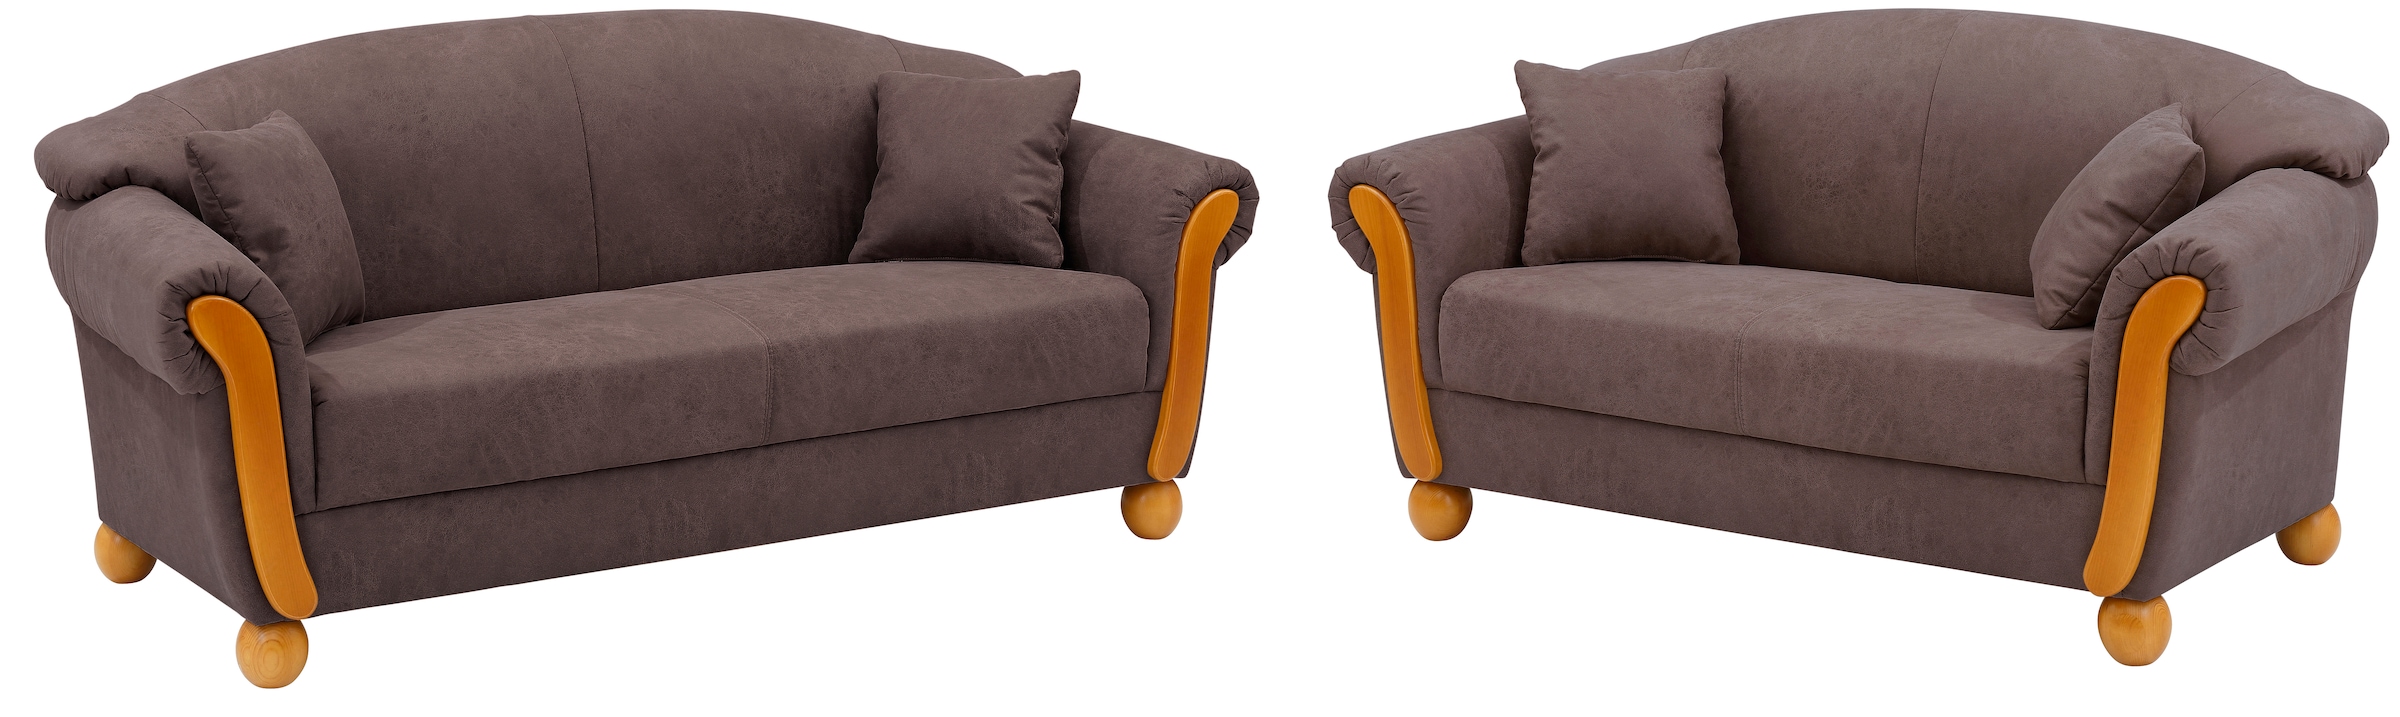 Home affaire Sofa-Set »Milano« 2-teilig, bestehend aus 2-Sitzer und 3-Sitzer Sofa inkl. Zierkissen